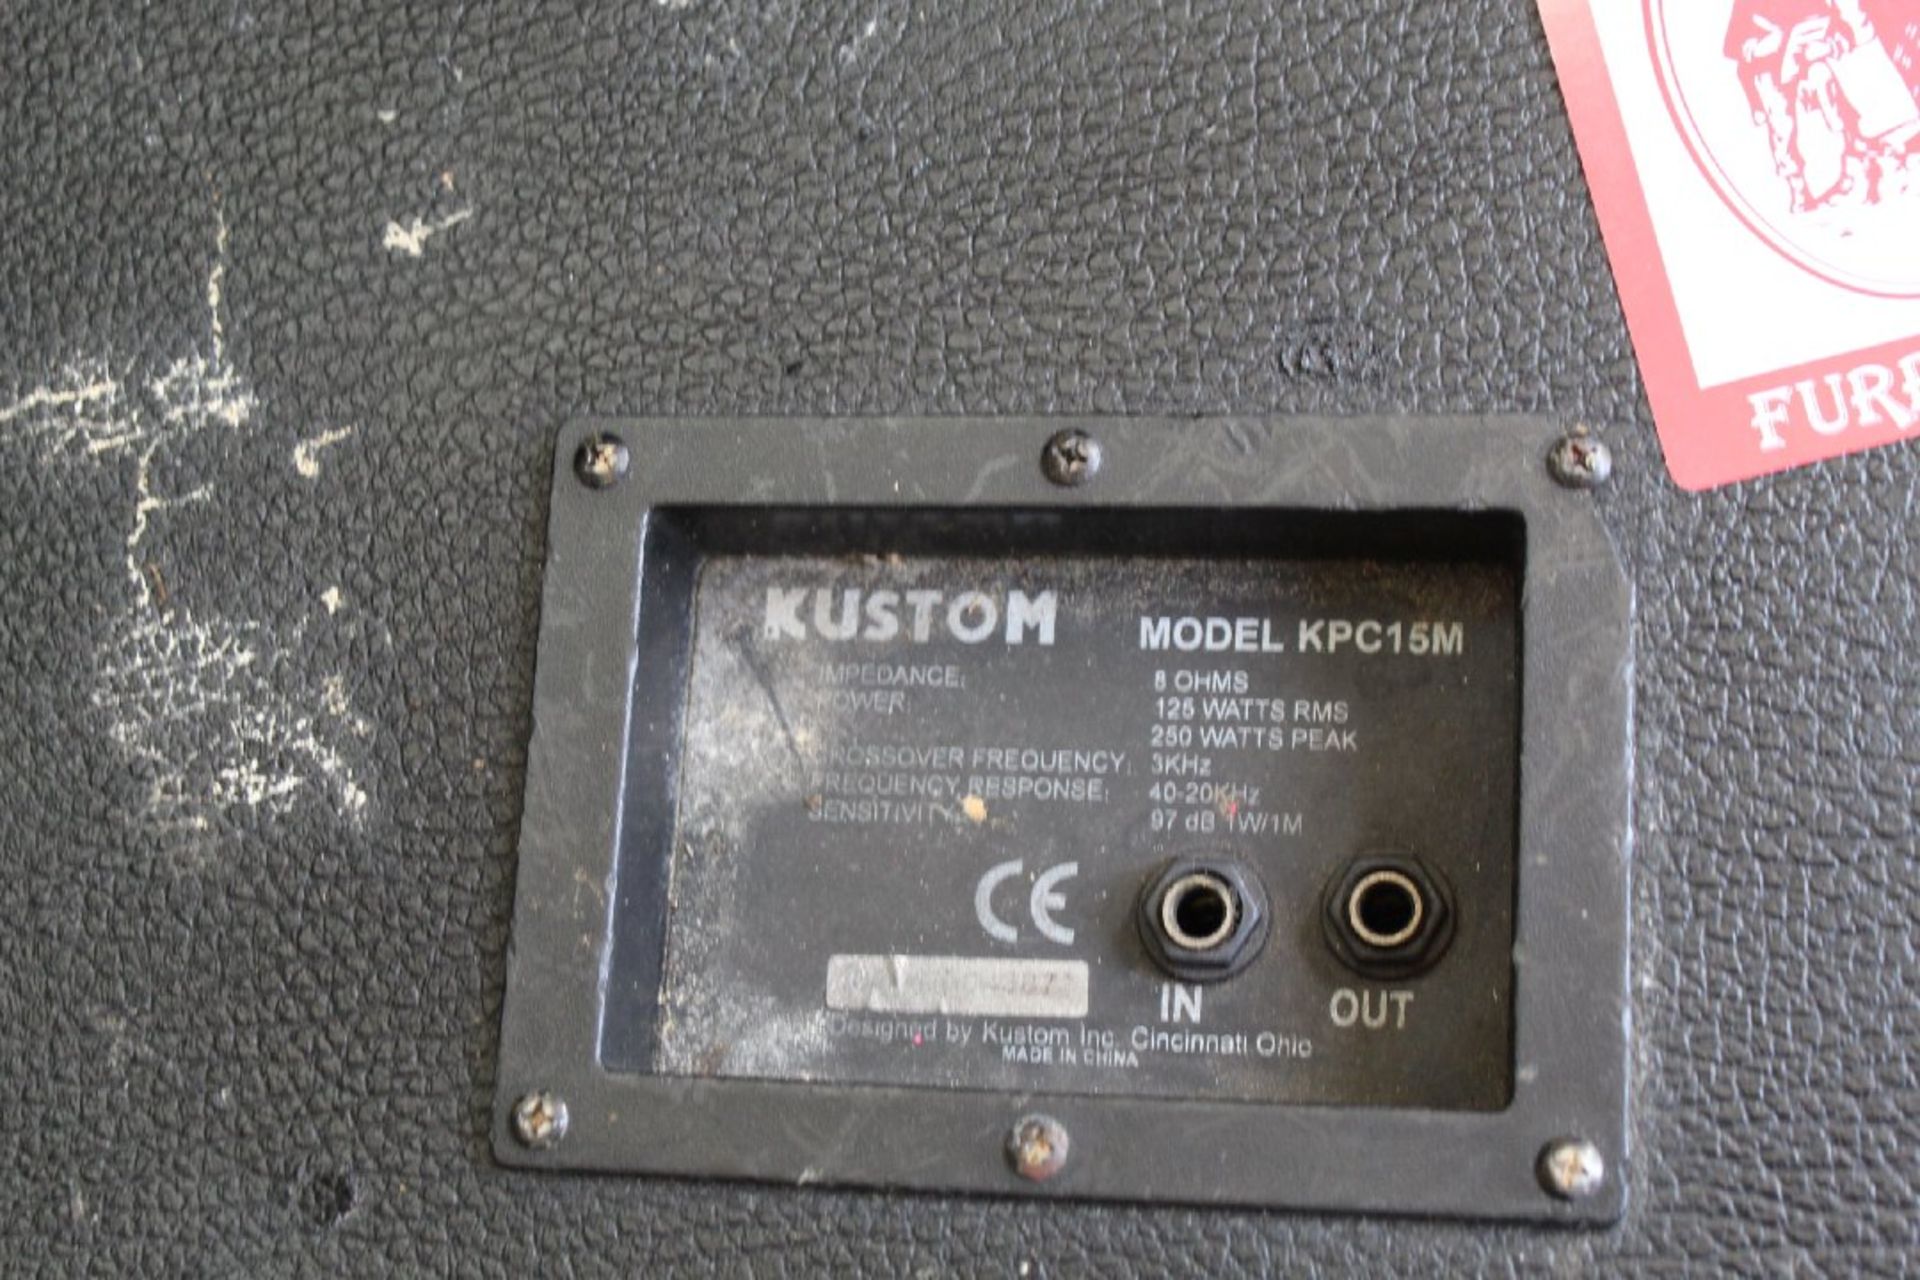 Pair of monitors, Kustom brand, Model KPC15M - Image 2 of 2